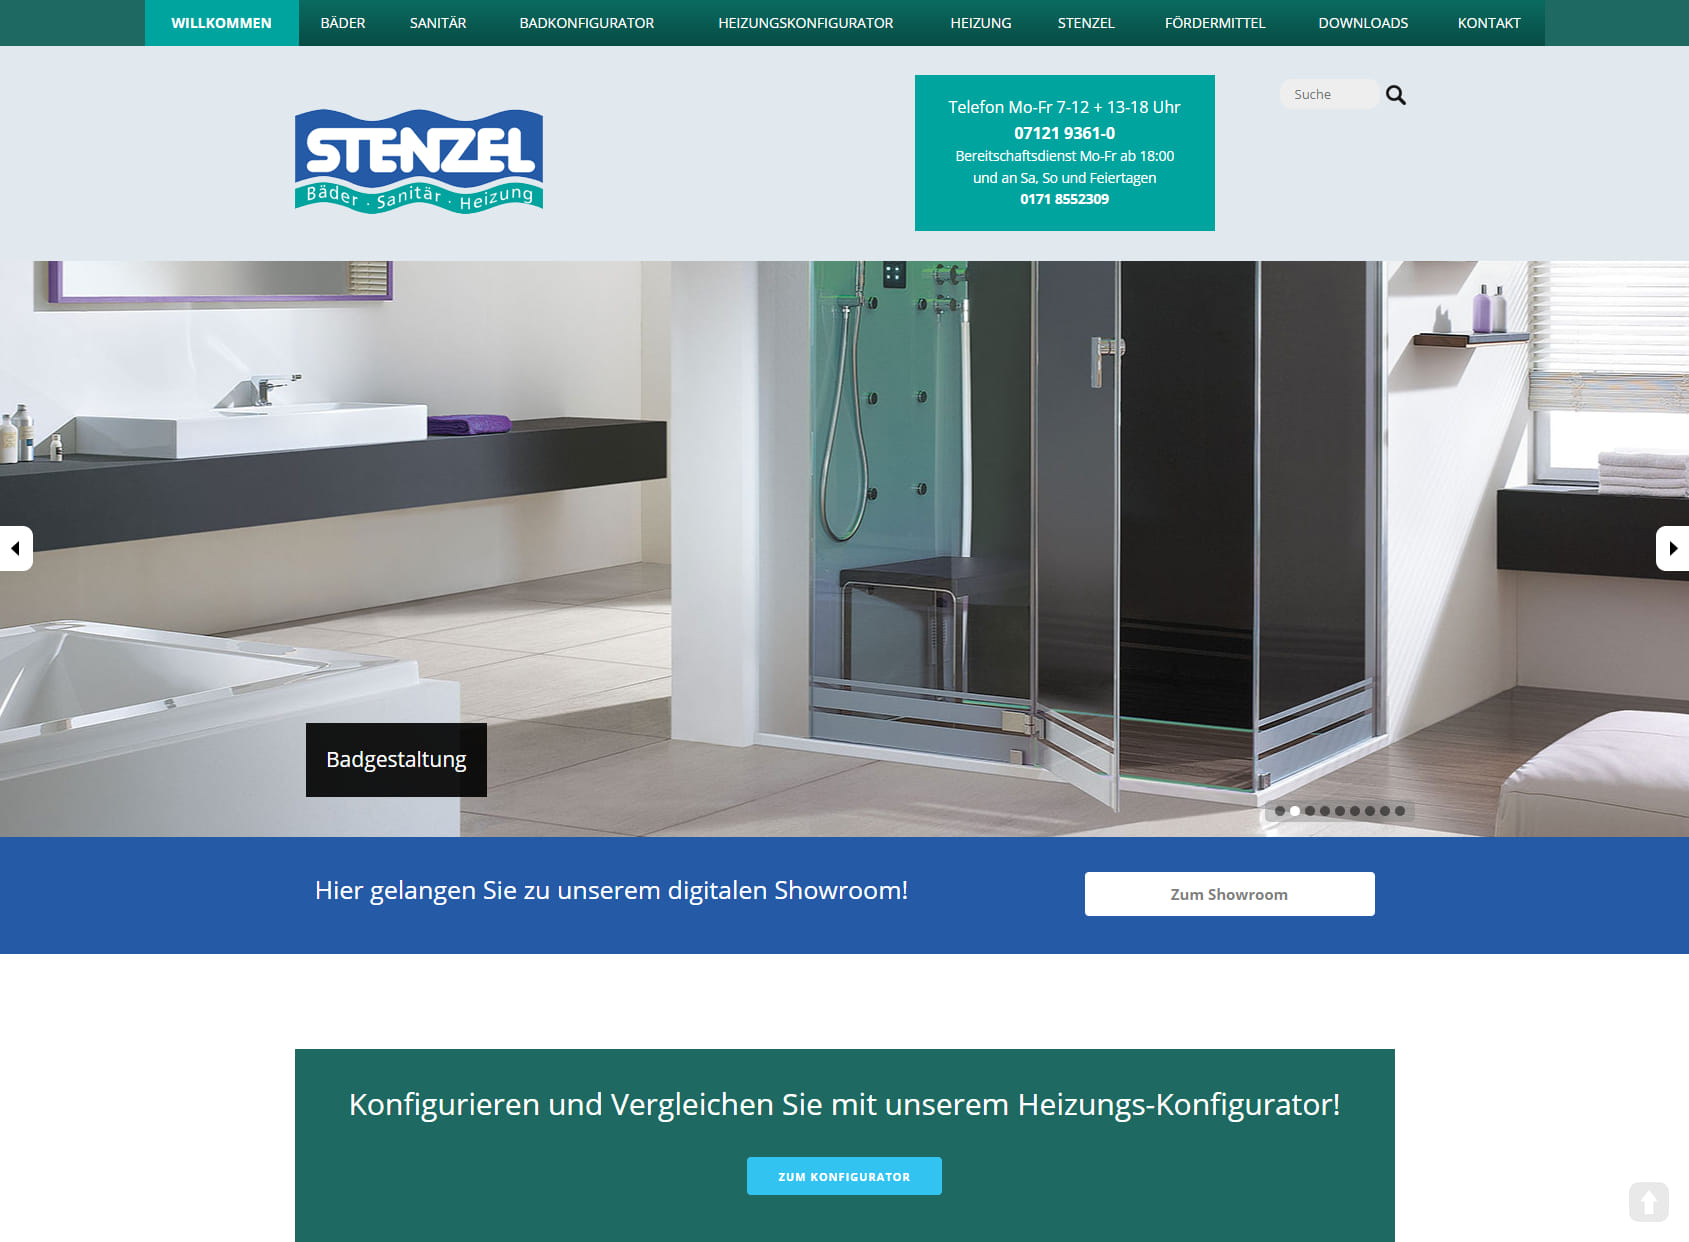 Stenzel GmbH